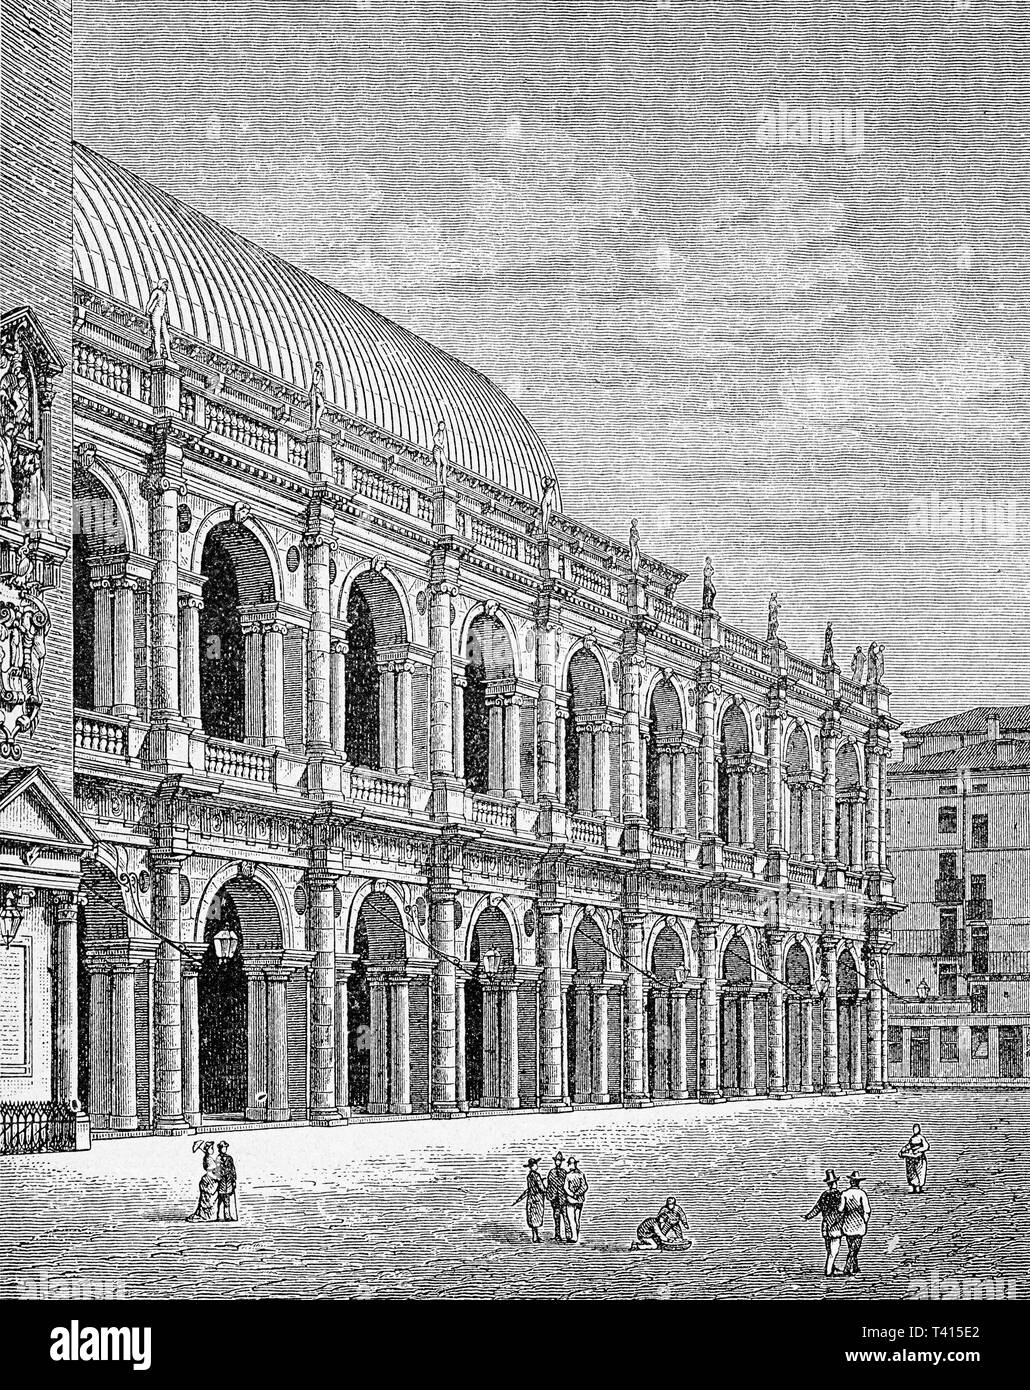 La Basilica Palladiana o Palazzo della Ragione es un edificio renacentista en el centro de la ciudad italiana de Vicenza, diseñado por el arquitecto Andrea Palladio en el siglo XV rodeado por un espectacular pórtico de mármol blanco. Foto de stock